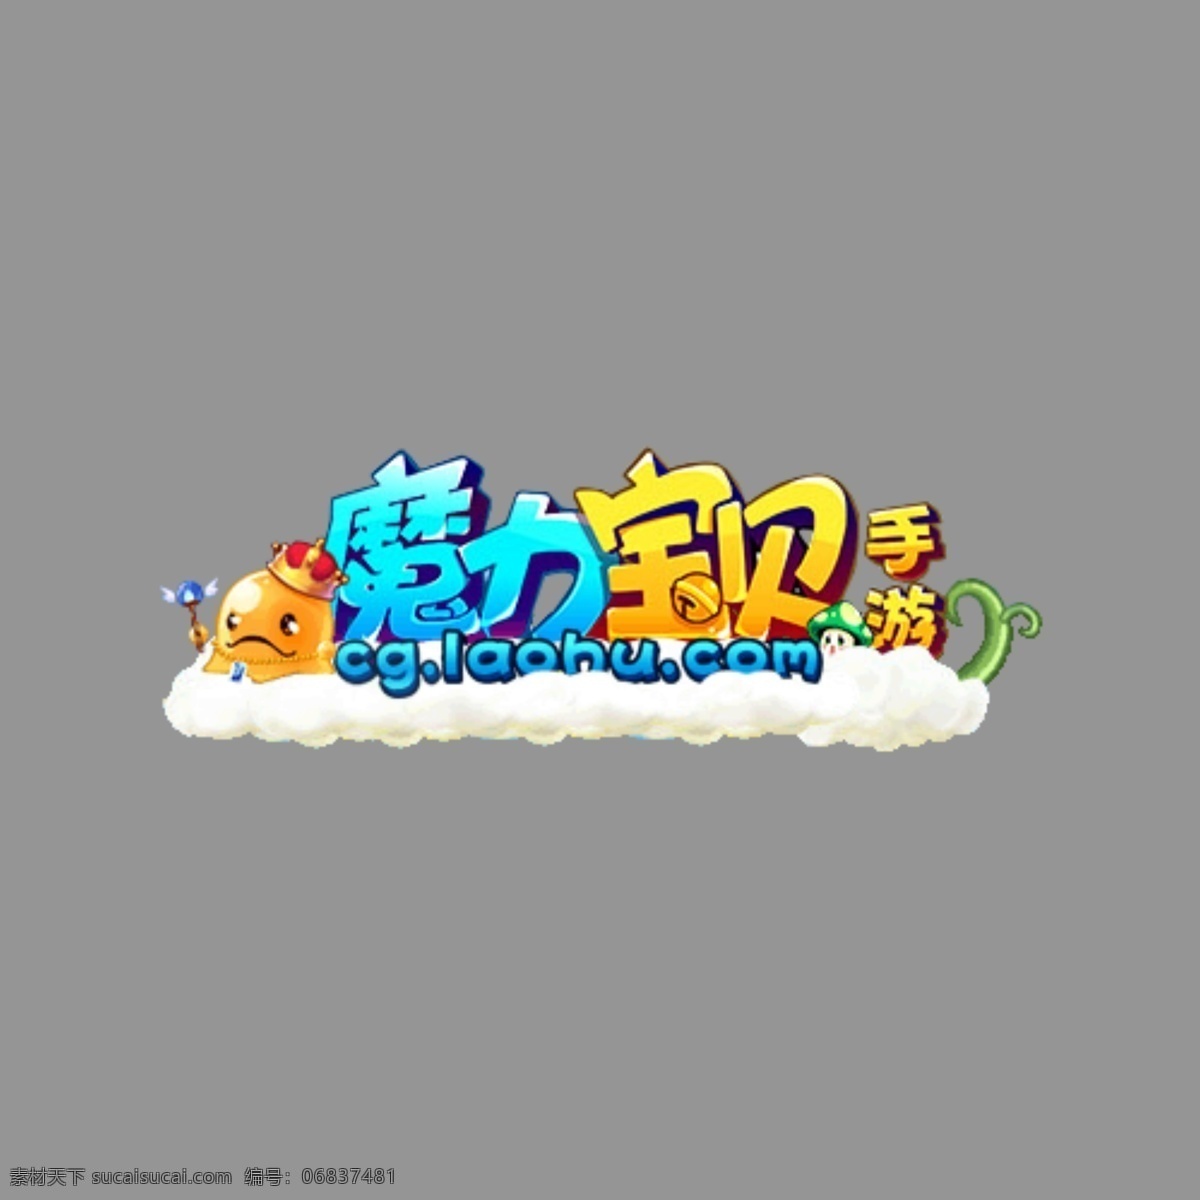 魔力宝贝 logo 手机游戏 图标 游戏logo psd源文件 logo设计